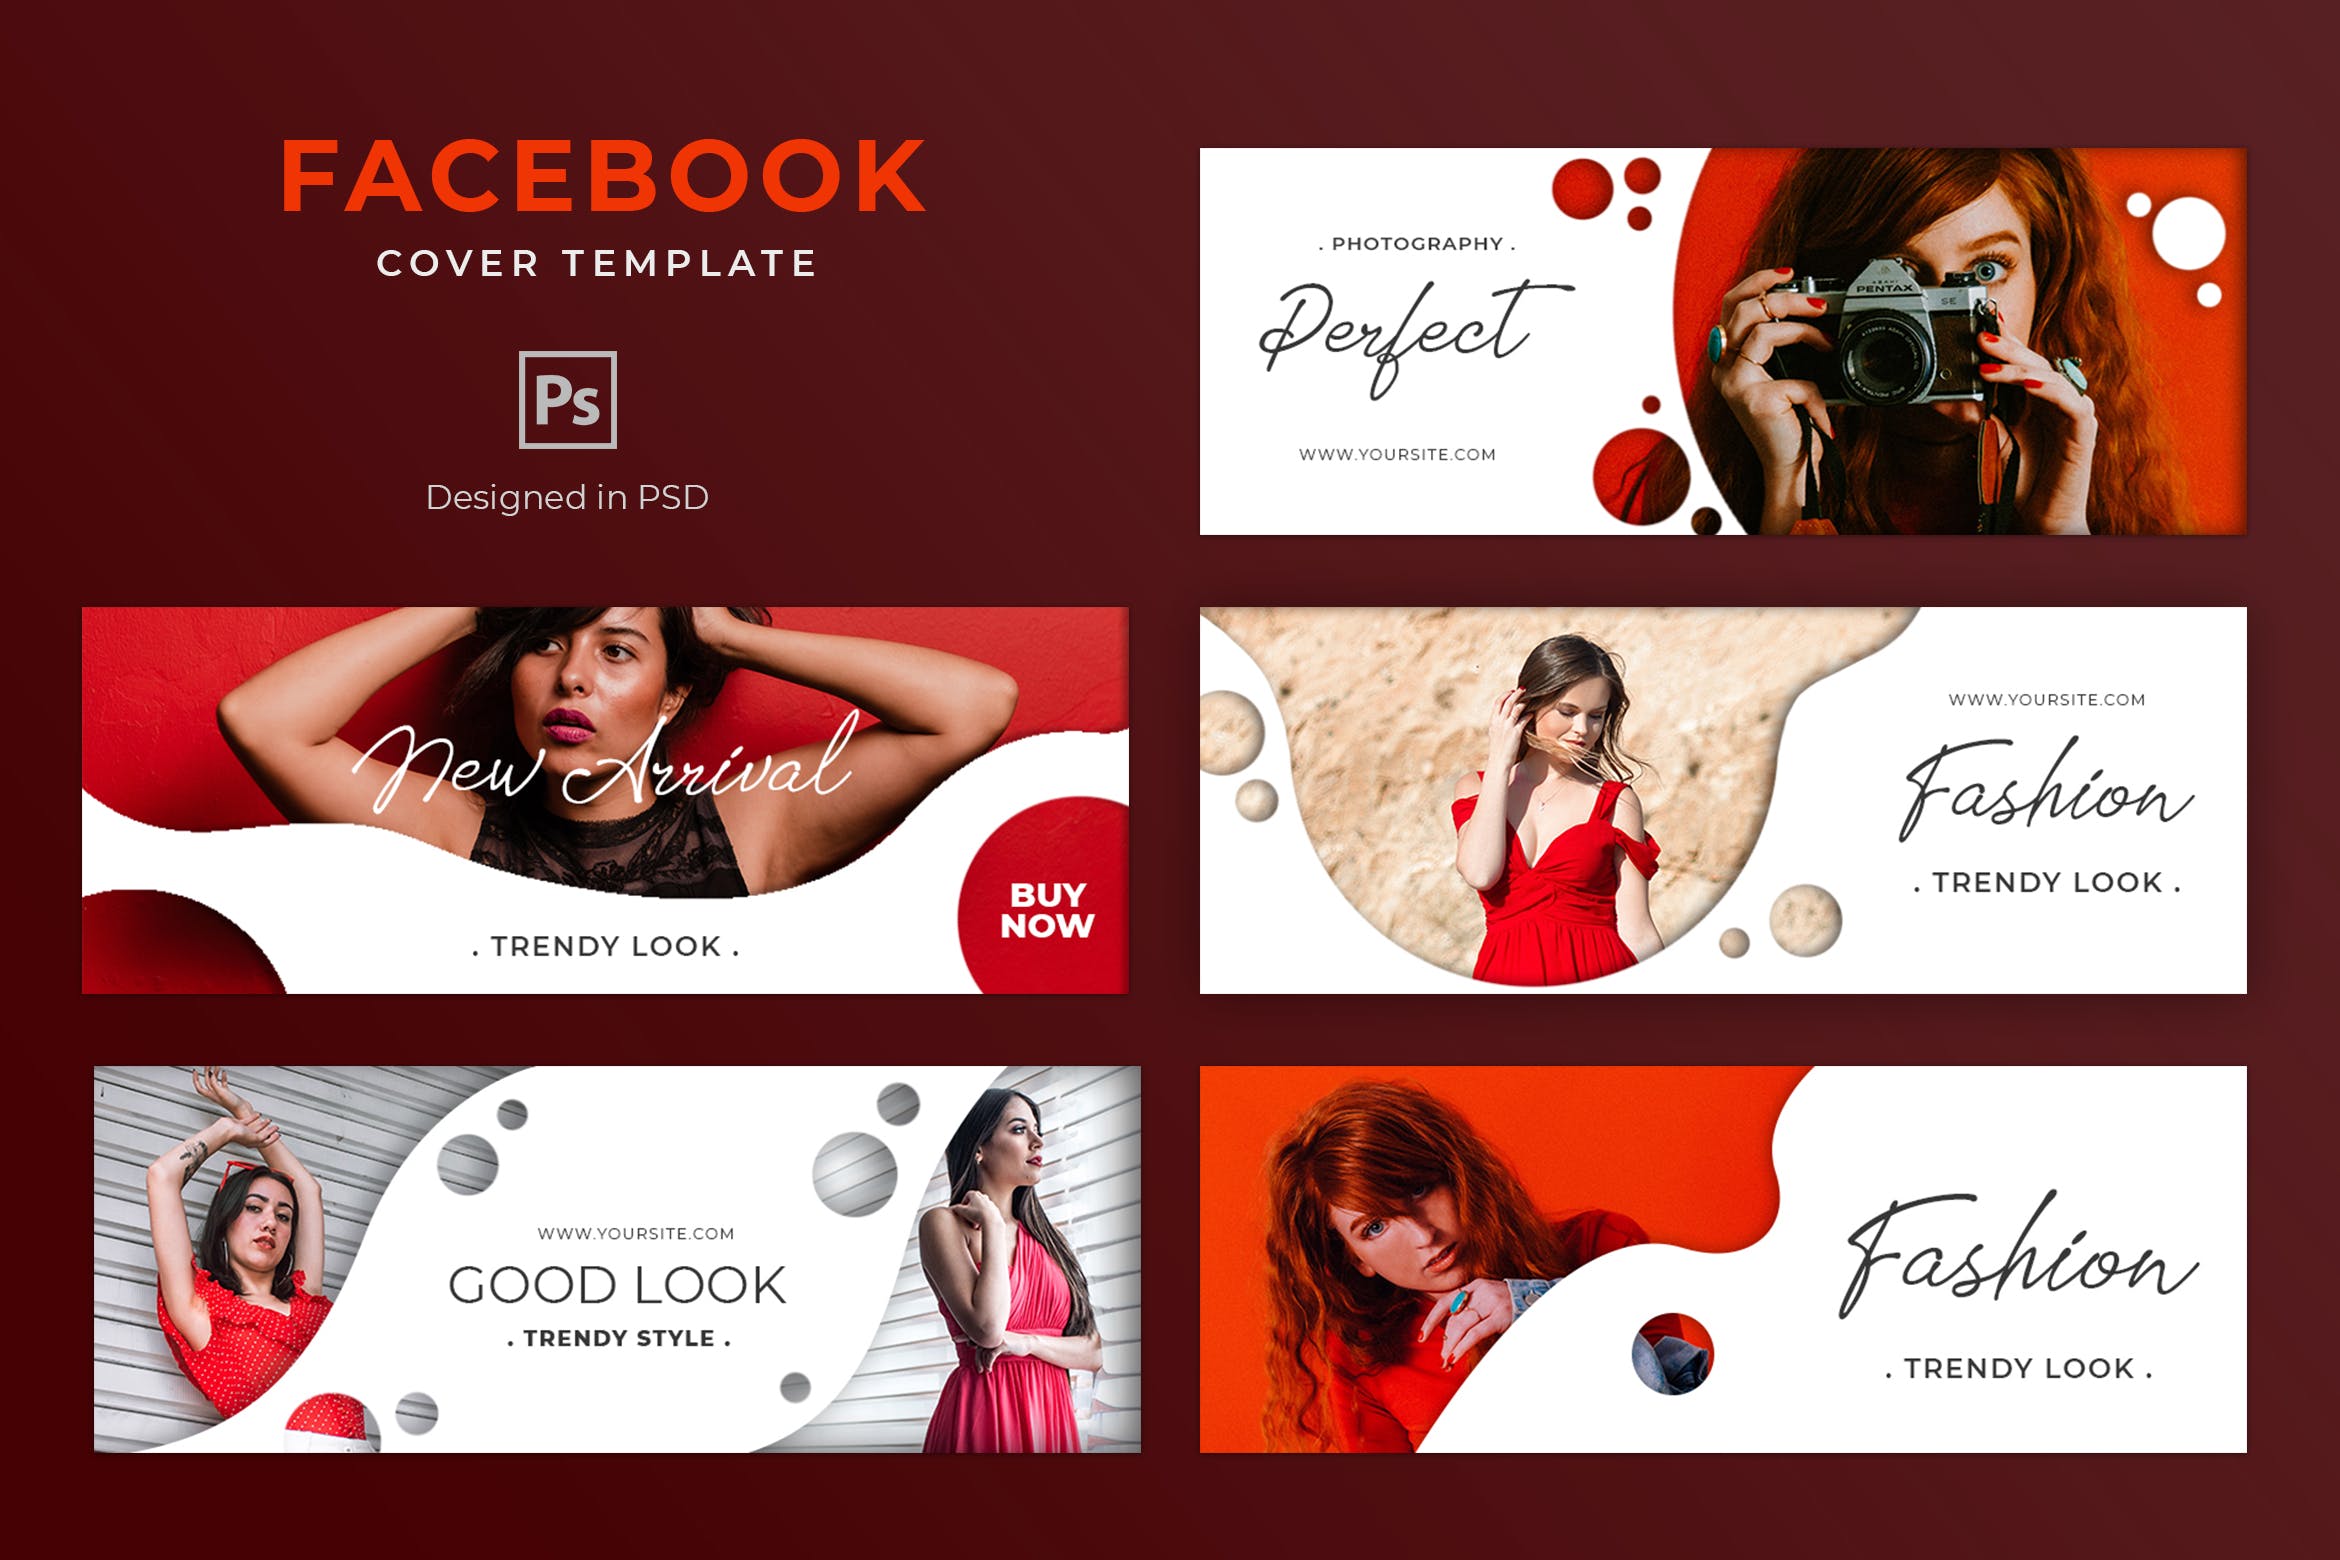 时尚奢侈品牌Facebook主页营销推广封面设计模板第一素材精选 Fashion Facebook Cover Template插图